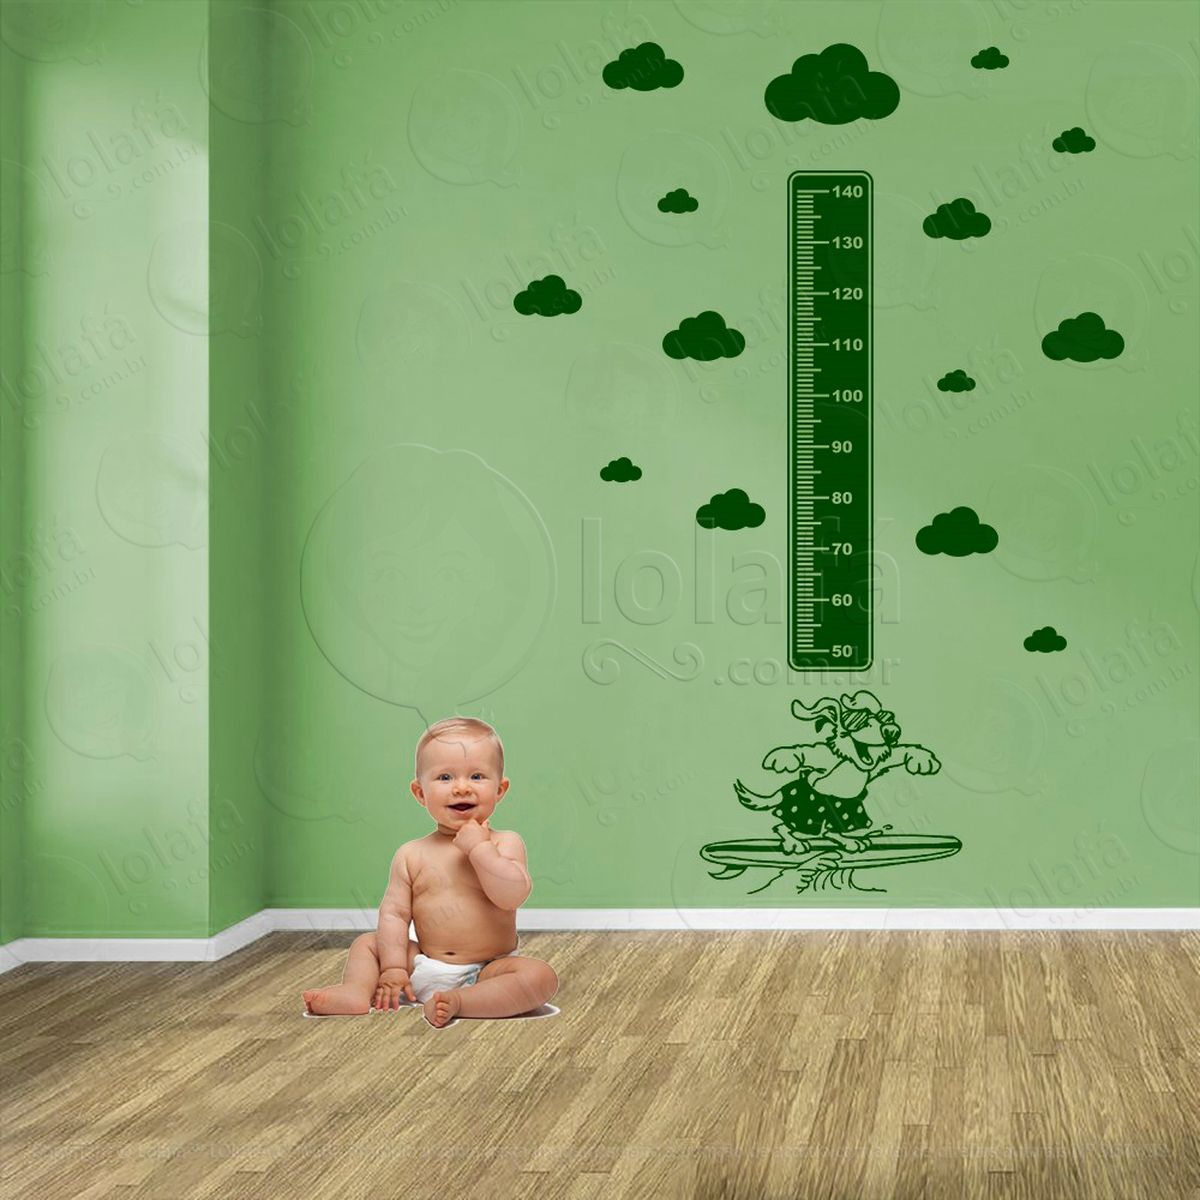 surf e nuvens adesivo régua de crescimento infantil, medidor de altura para quarto, porta e parede - mod:451